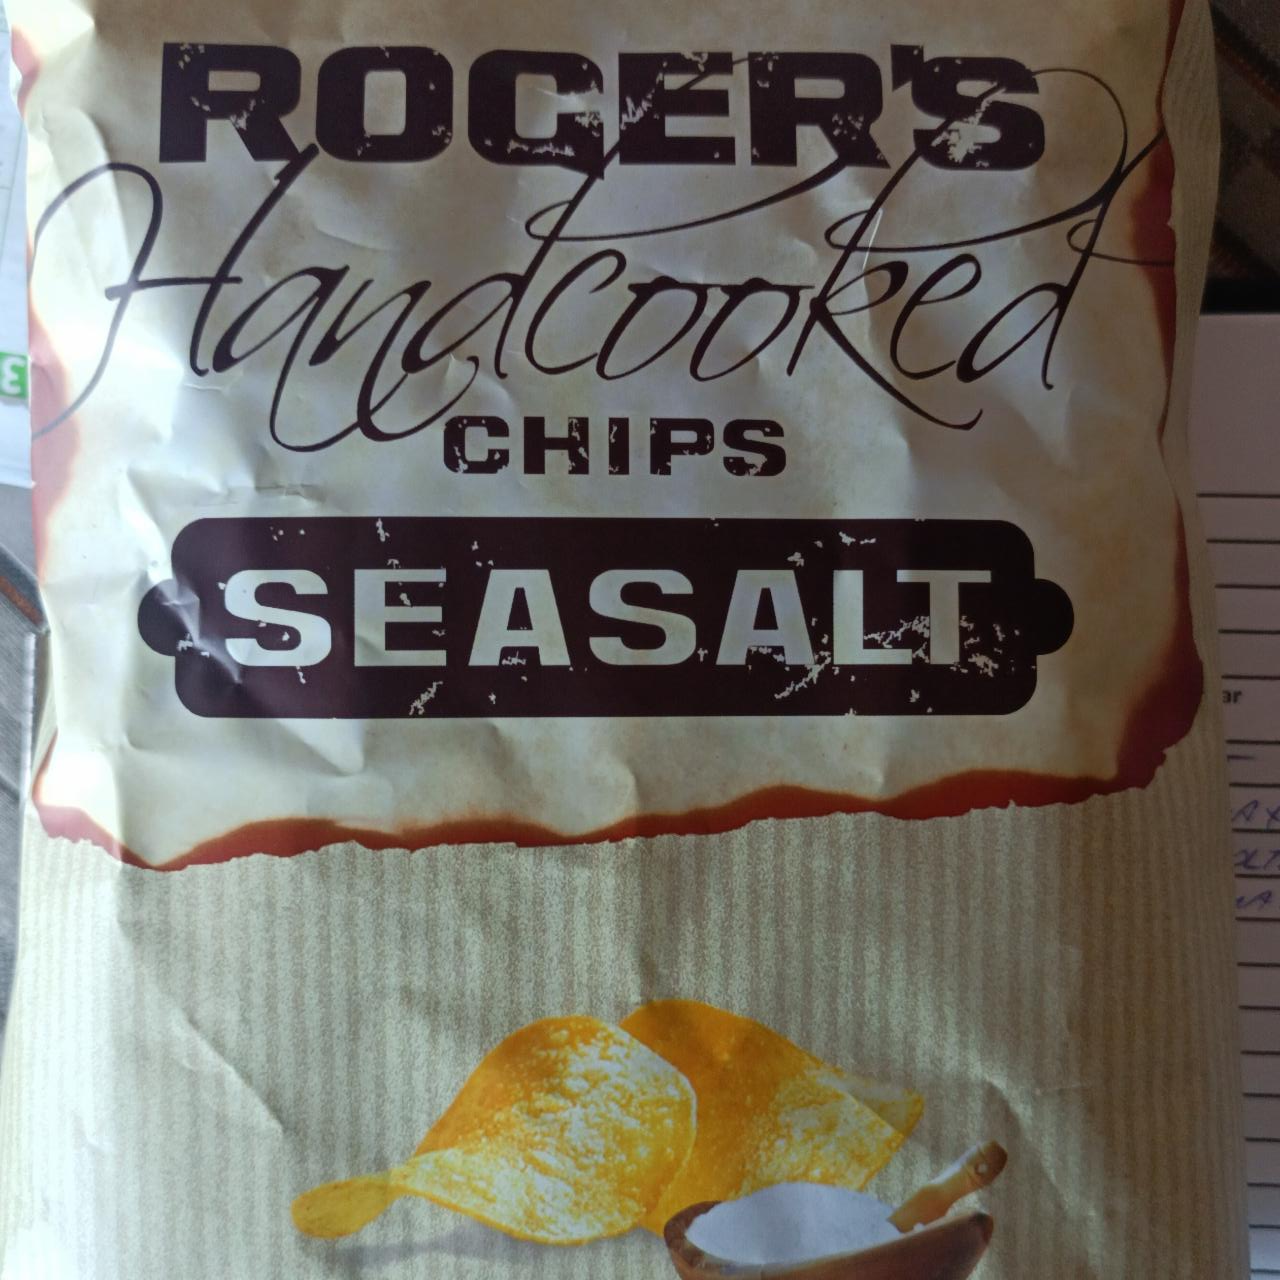 Fotografie - Handcooked chips seasalt Roger's